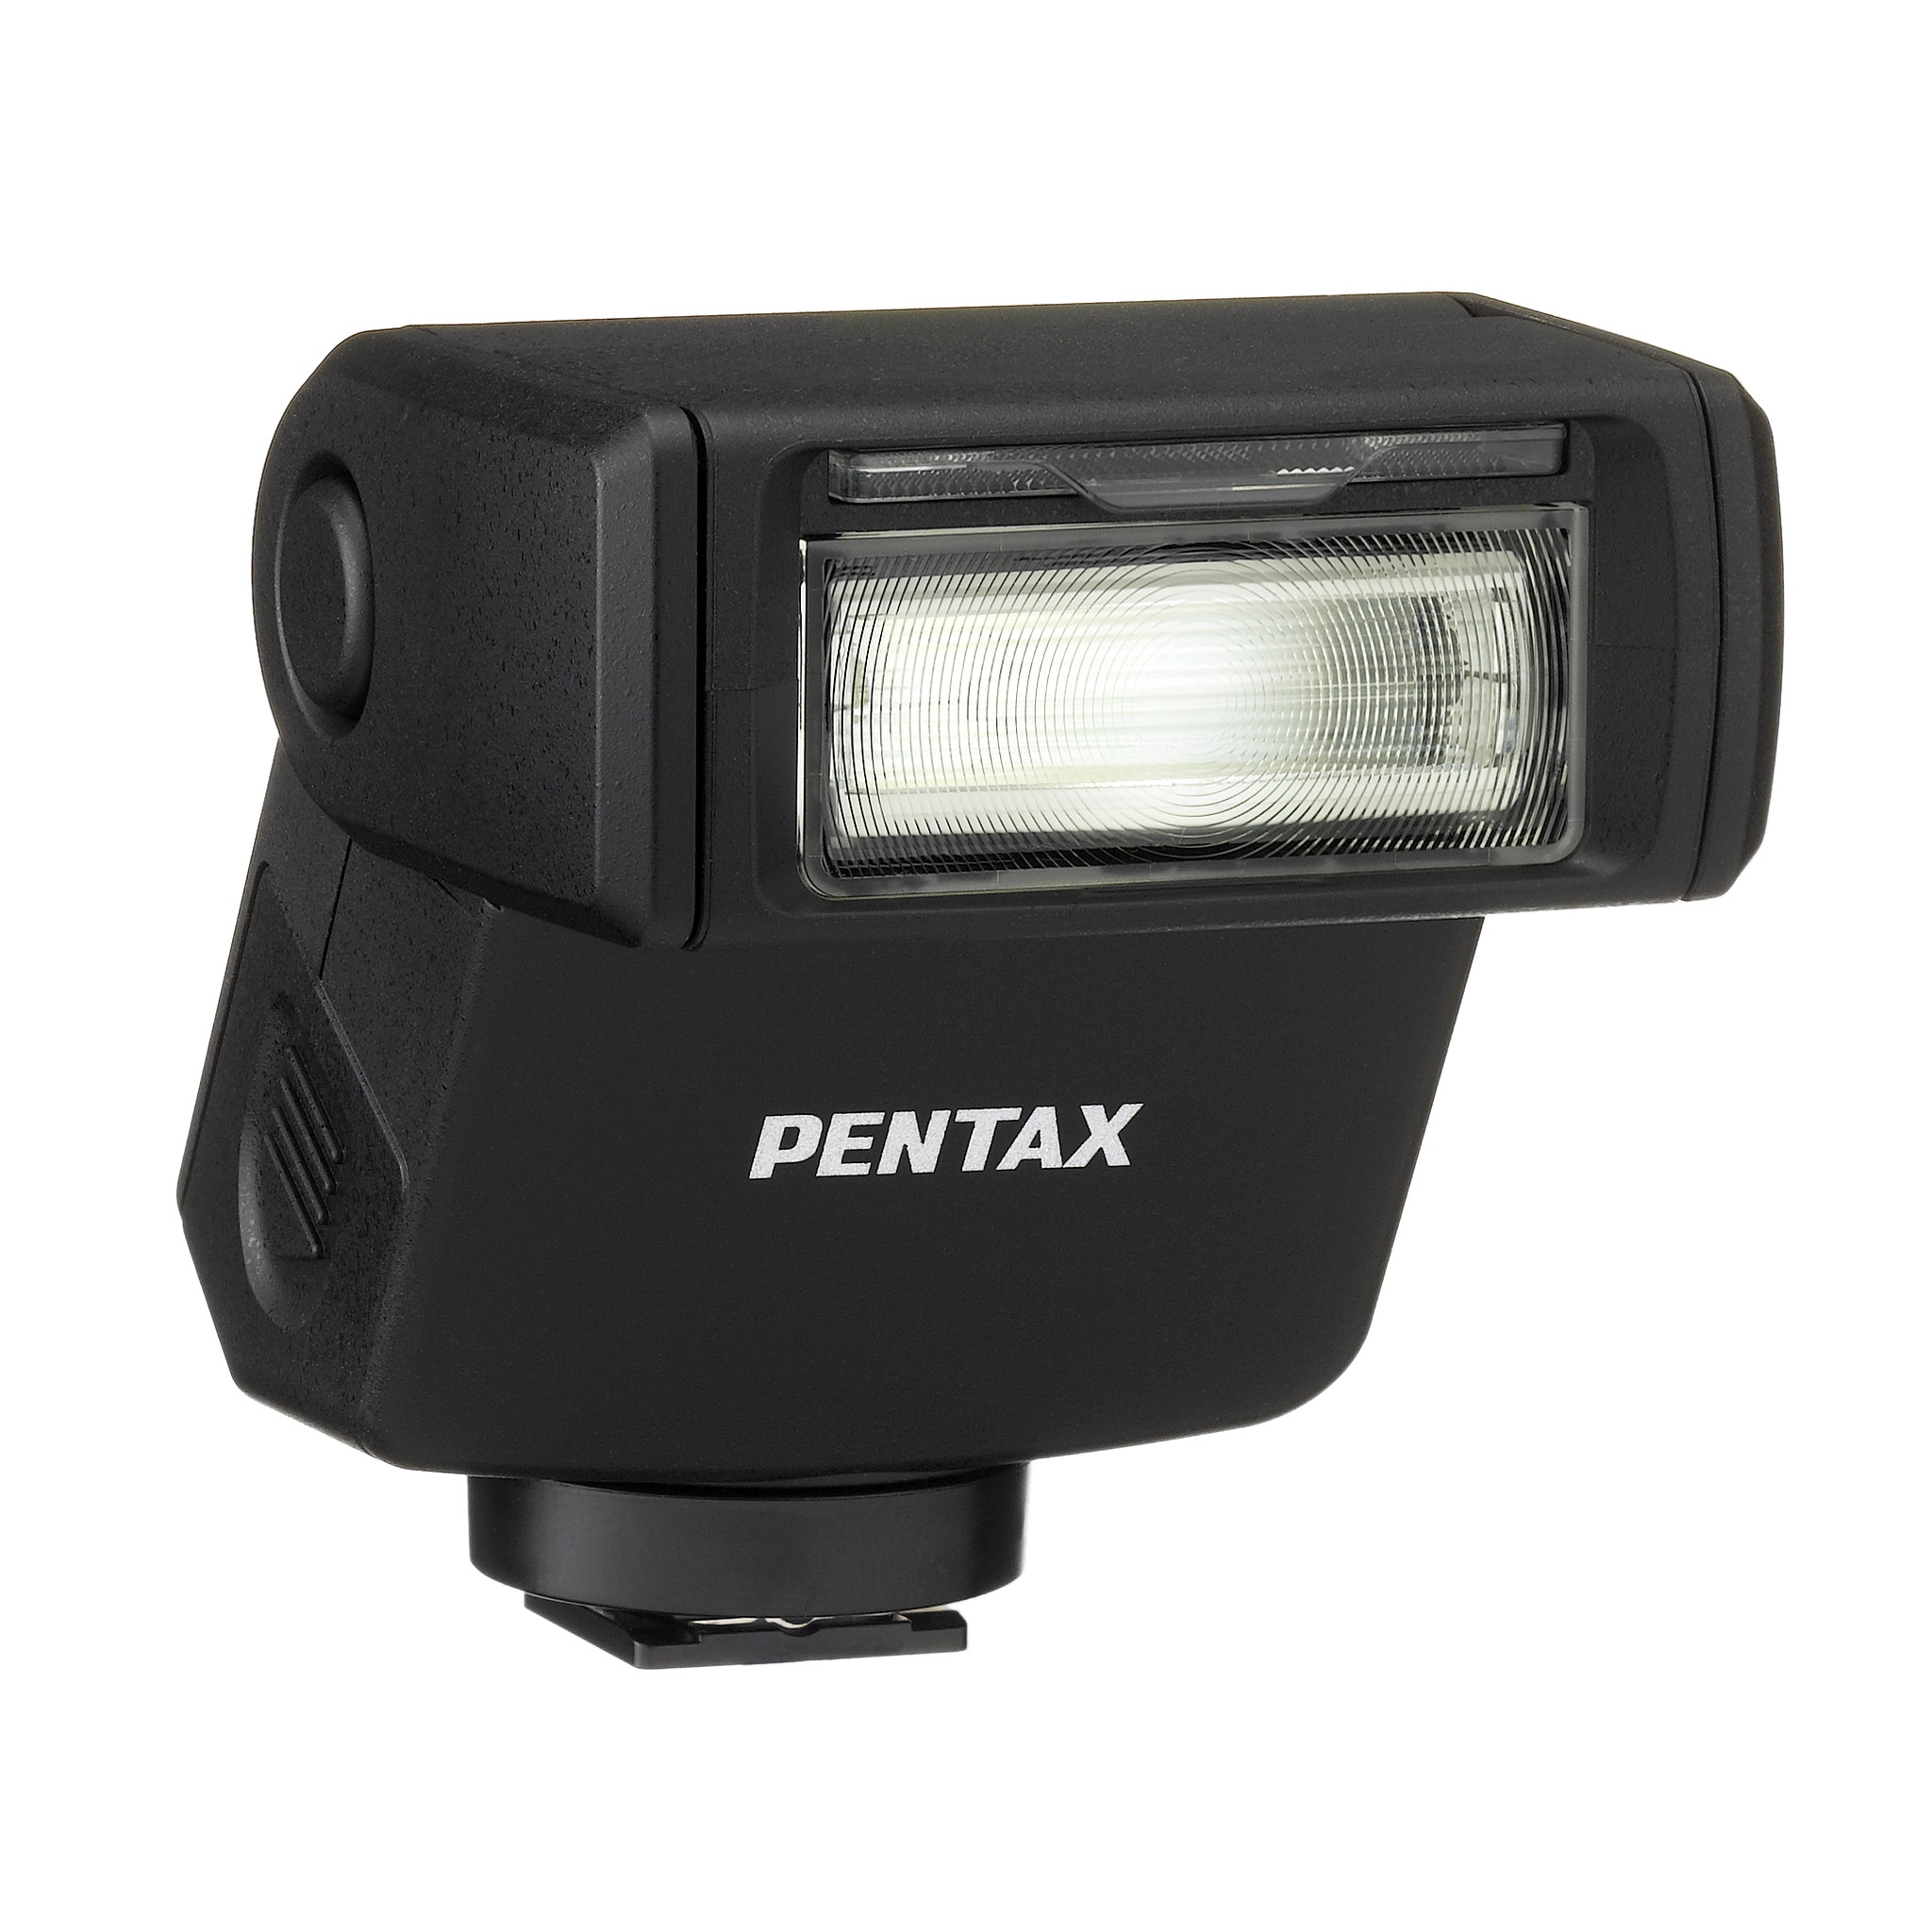 AF201FG A compact auto flash unit for PENTAX lens-interchangeable